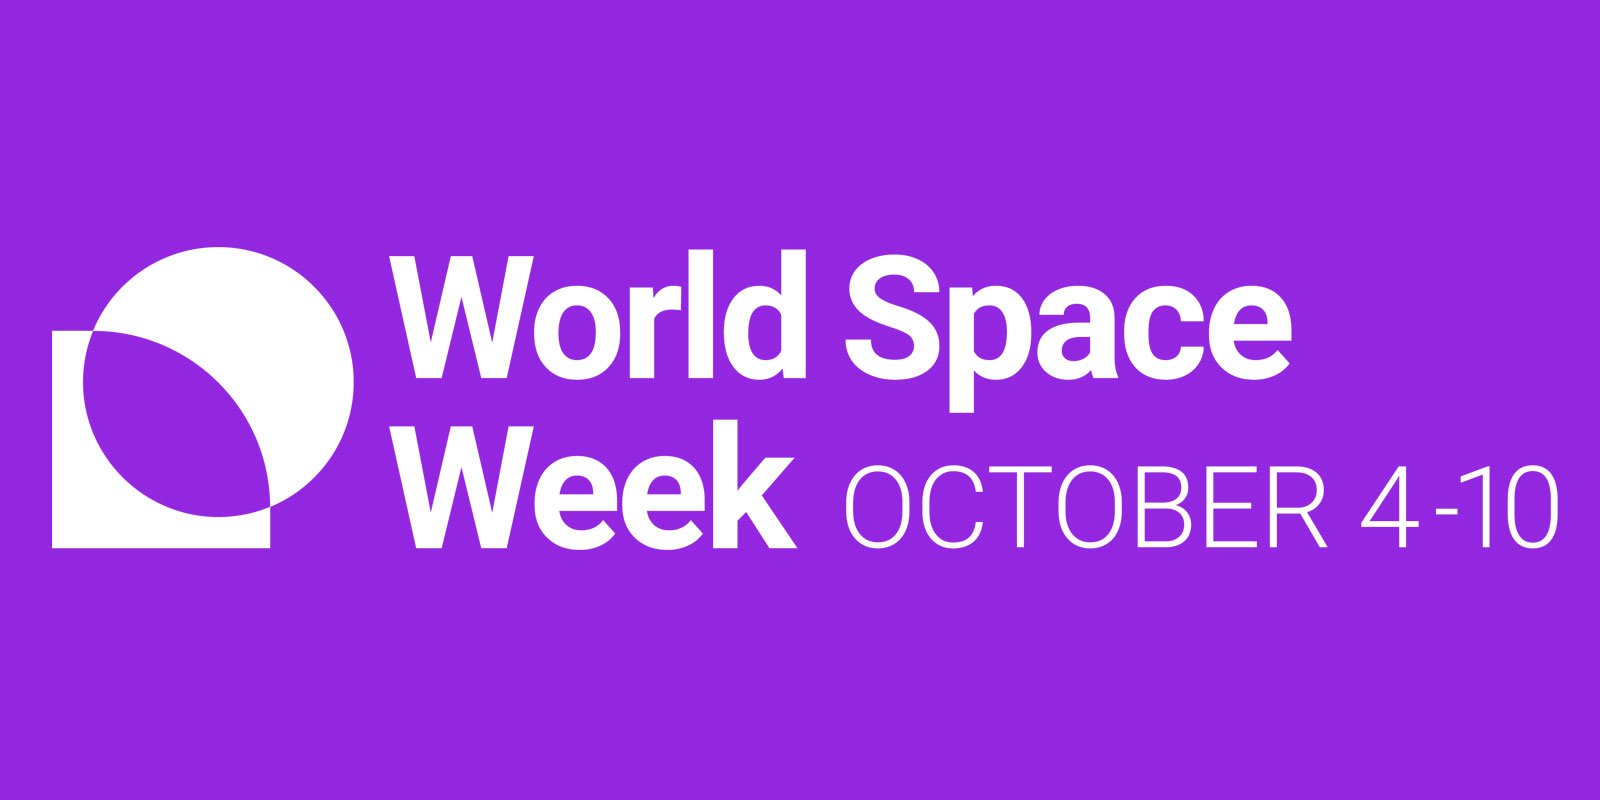 World Space Week 2022 - UKspace